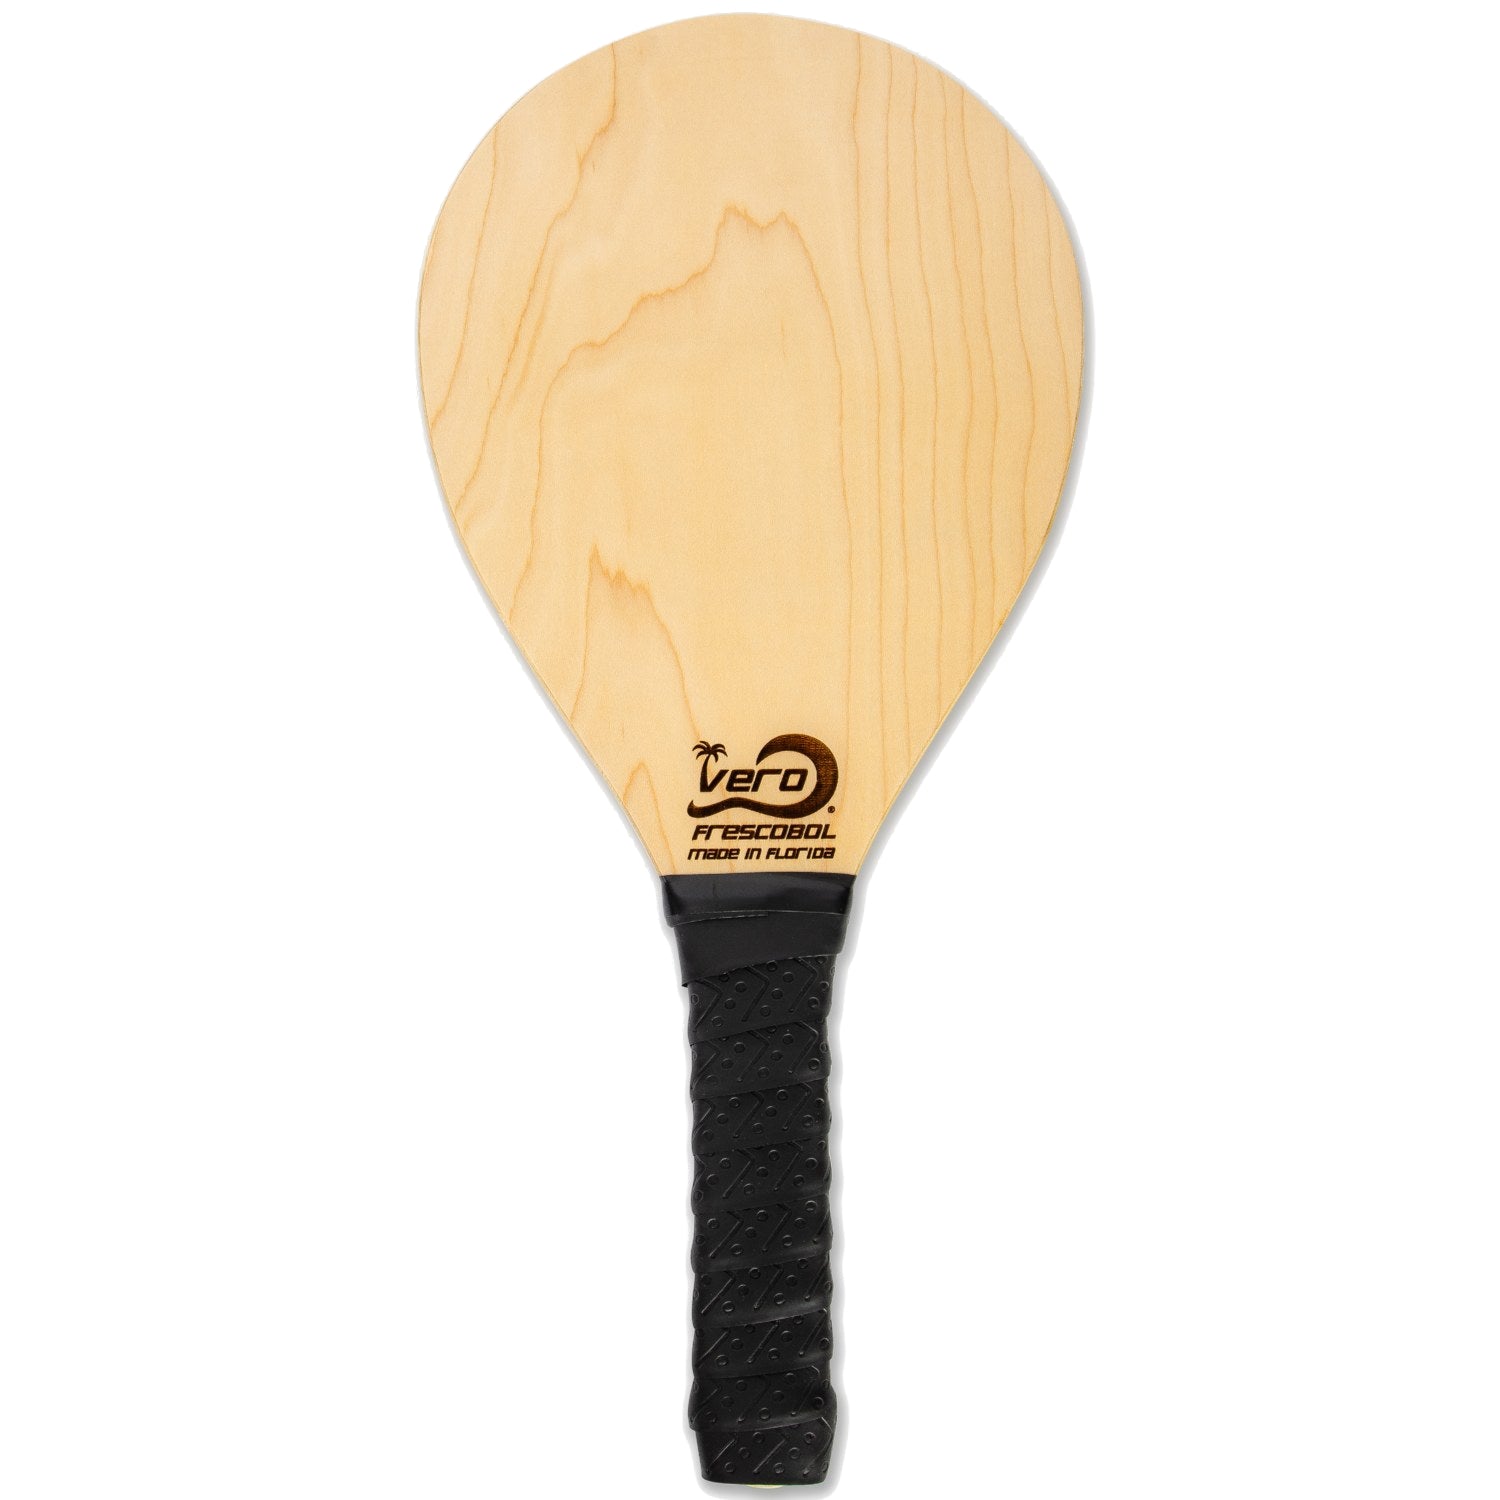 American Birch Wood Scratch-n-dent Frescobol Paddle